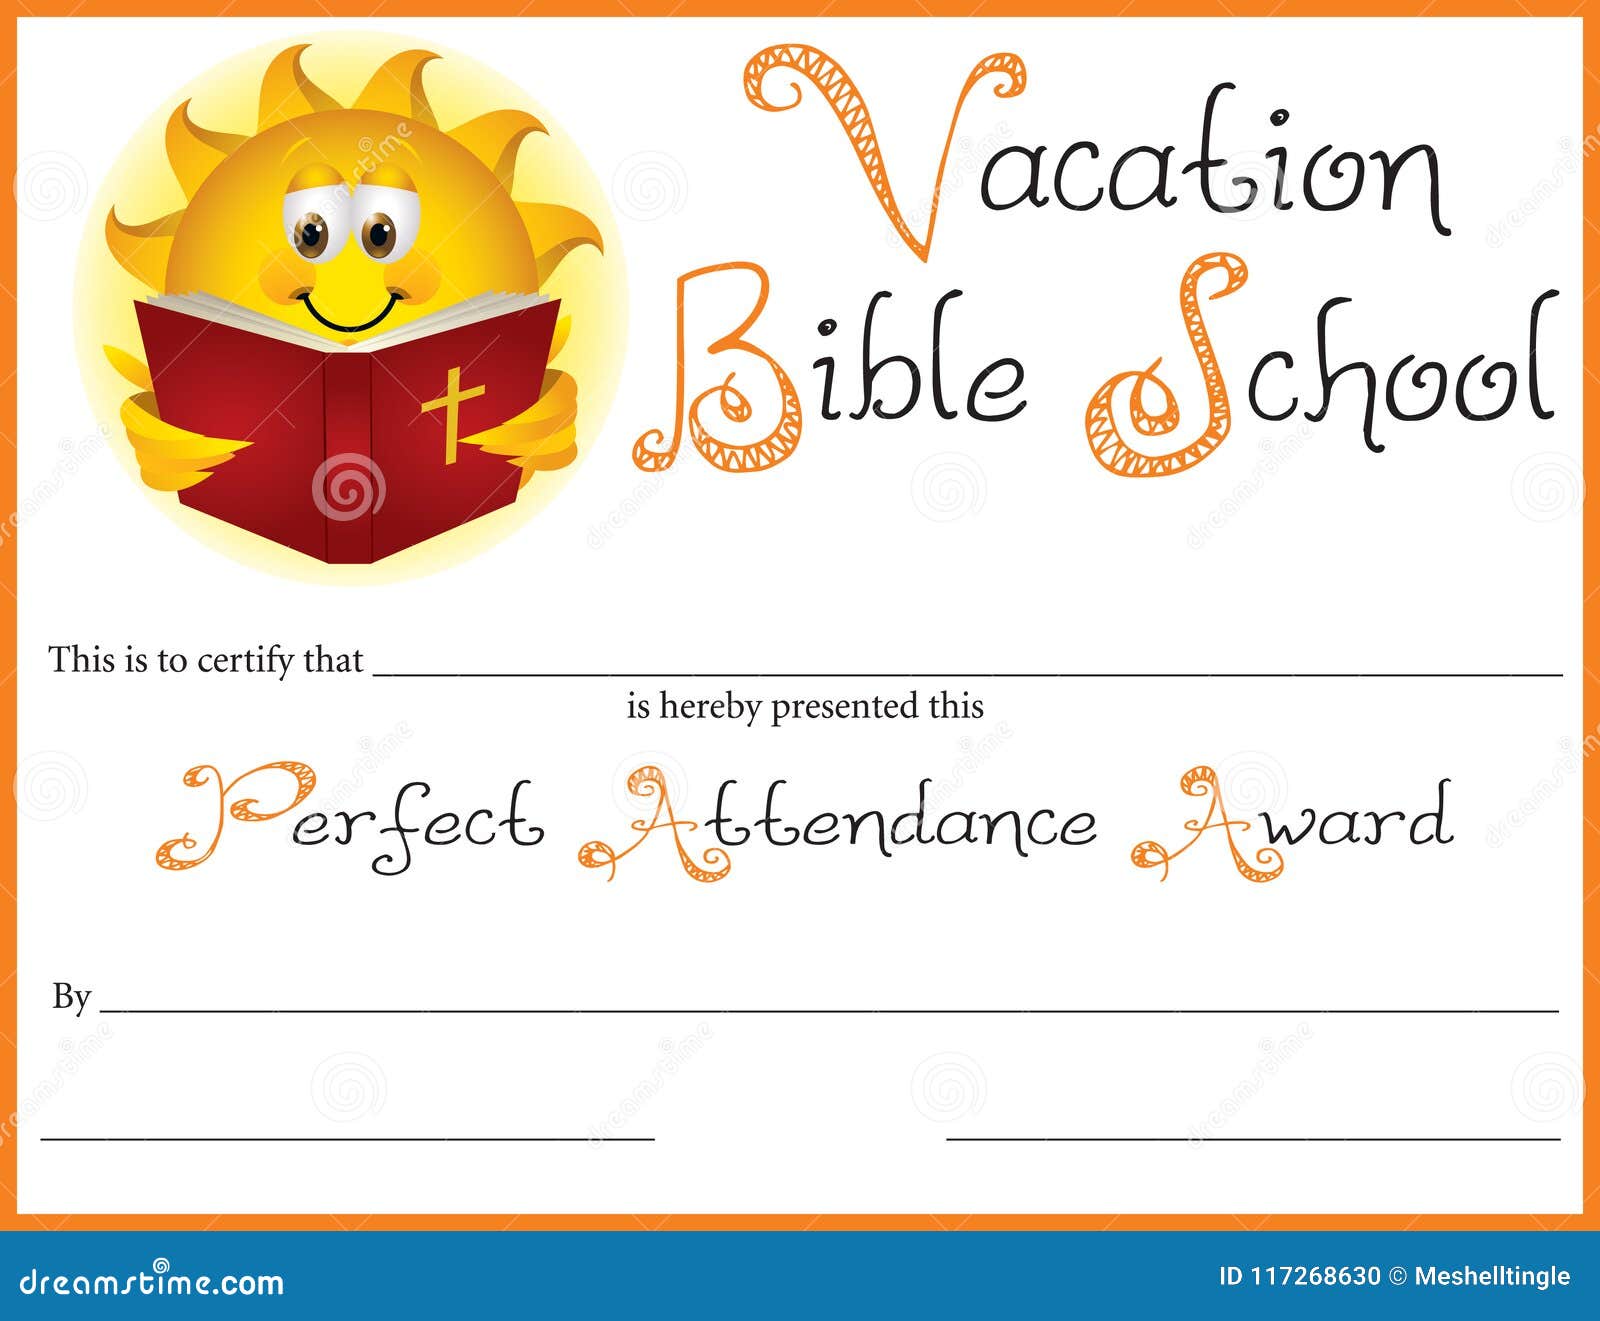 Vacation Bible School Certificate